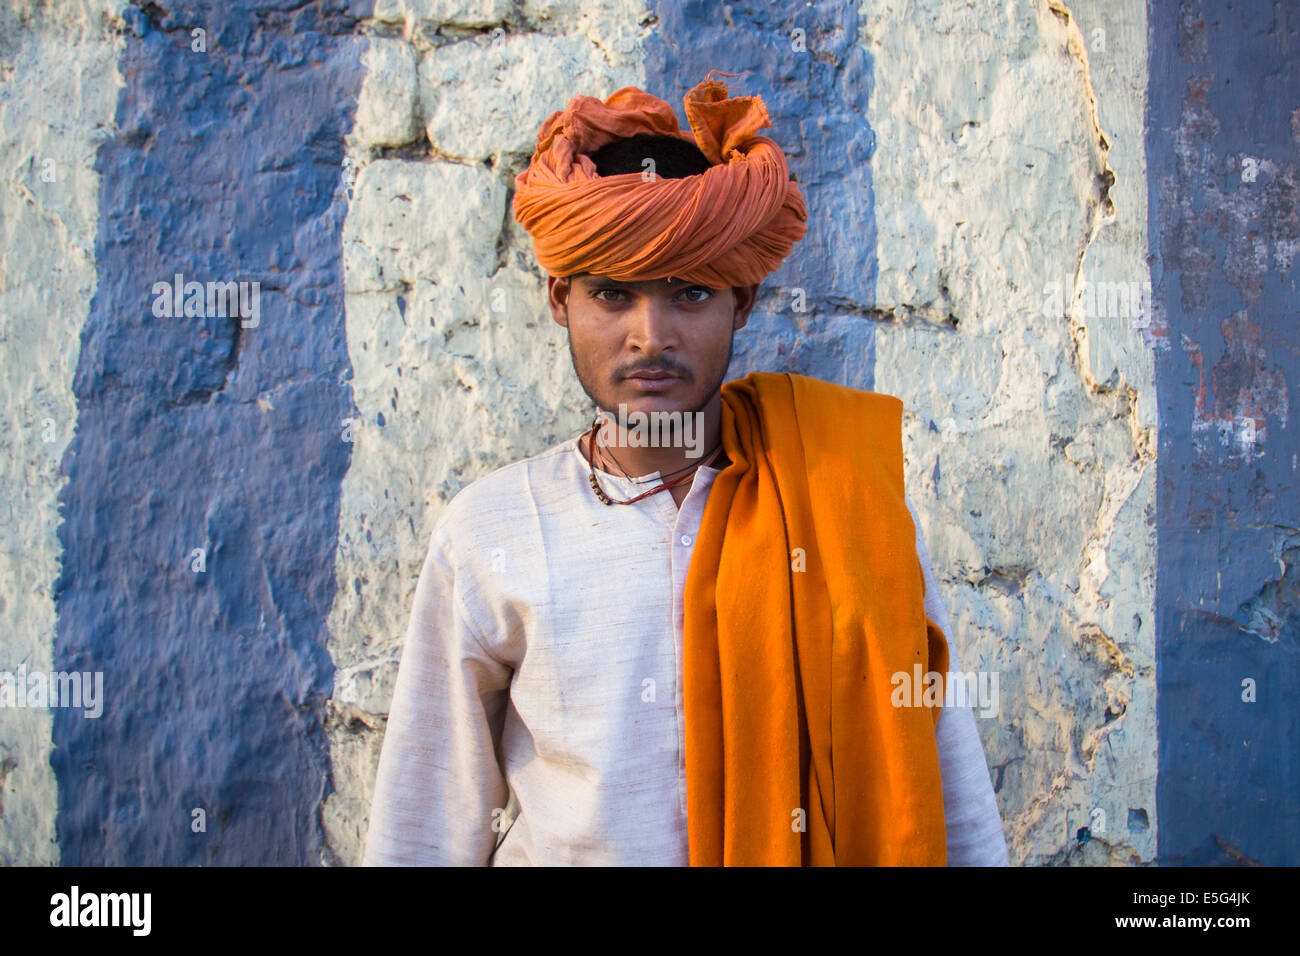 Giovani colorato uomo indù, indossando un turban arancione, posa davanti un muro a strisce nella parte vecchia di Nuova Delhi, capitale dell'India. Foto Stock